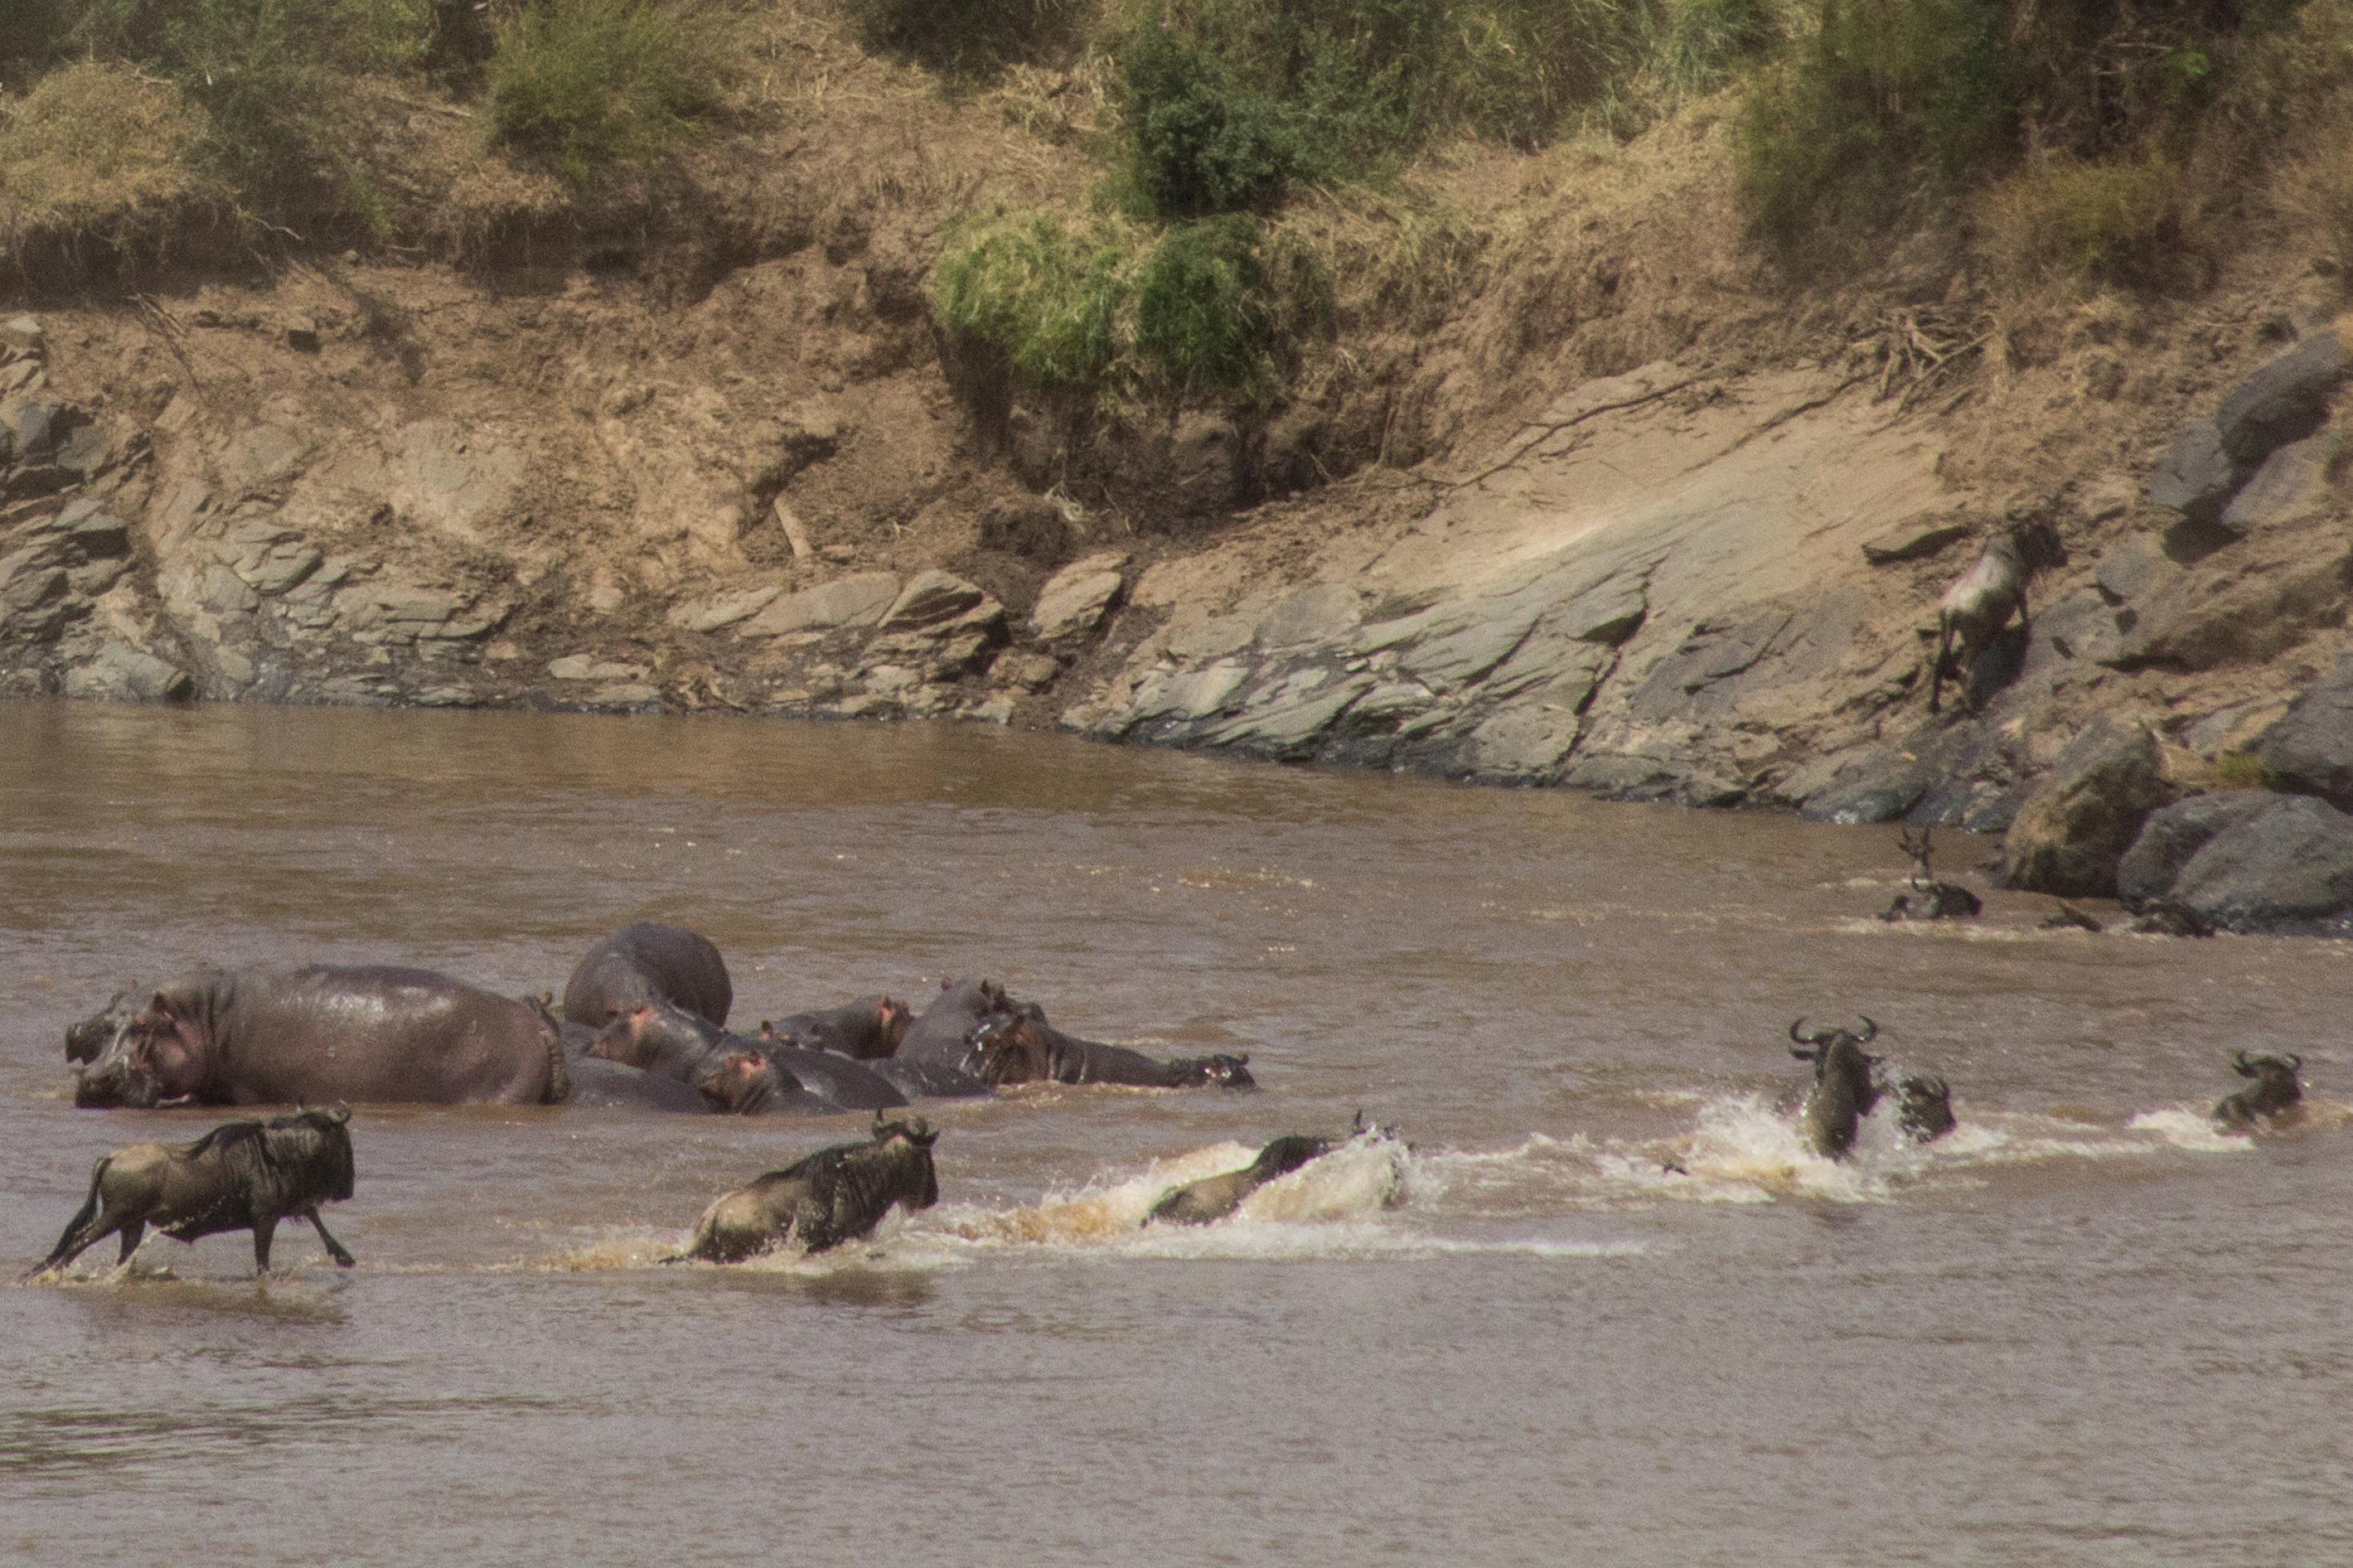 Zu sehen ist der Mara-Fluss, Gnus springen durch den Fluss. Daneben liegen Flusspferde. Oben auf dem Steilufer des Flusses stehen die Safari-Autos von Touristen.